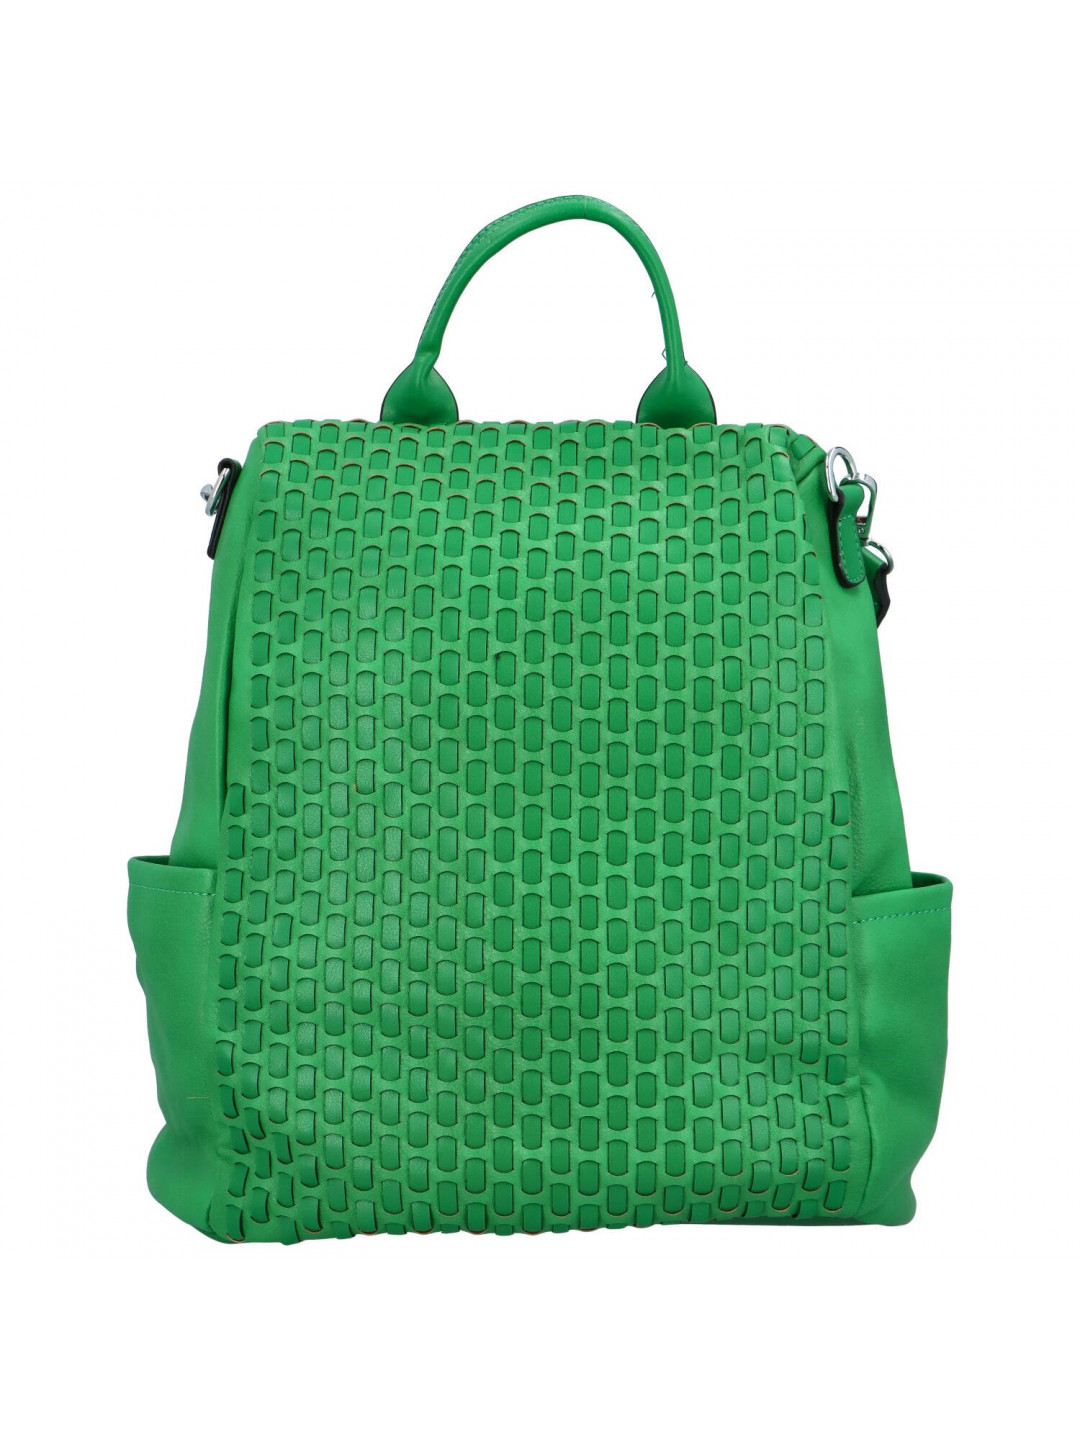 Osobitý dámský koženkový batoh Zita zelená